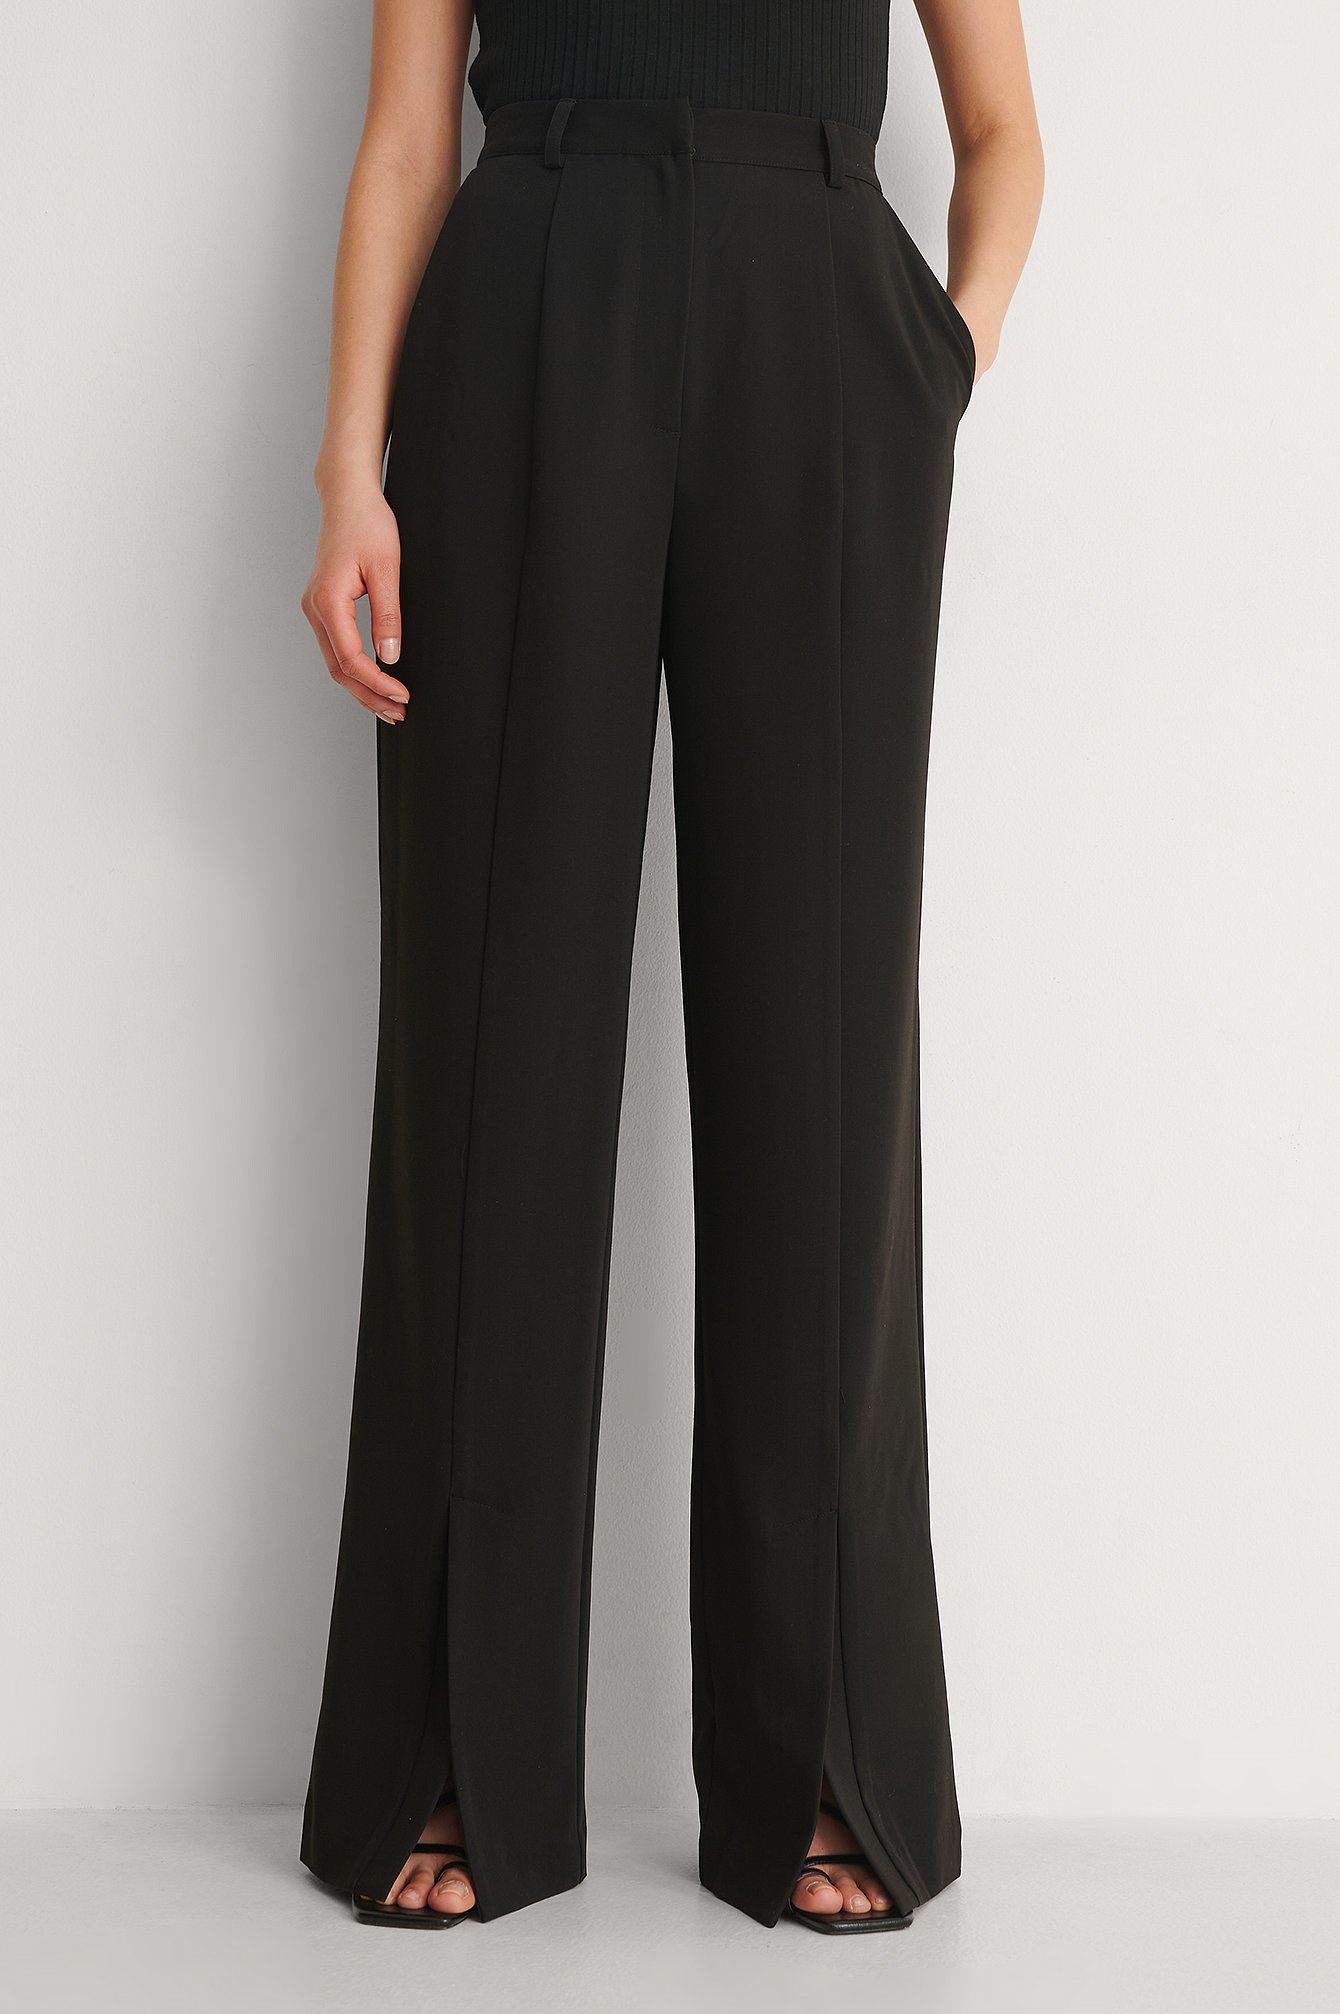 Damen Bekleidung Hosen und Chinos Ausgestellte und Palazzo Hosen NA-KD Synthetik Trend Front Slit Jersey Pants in Braun 